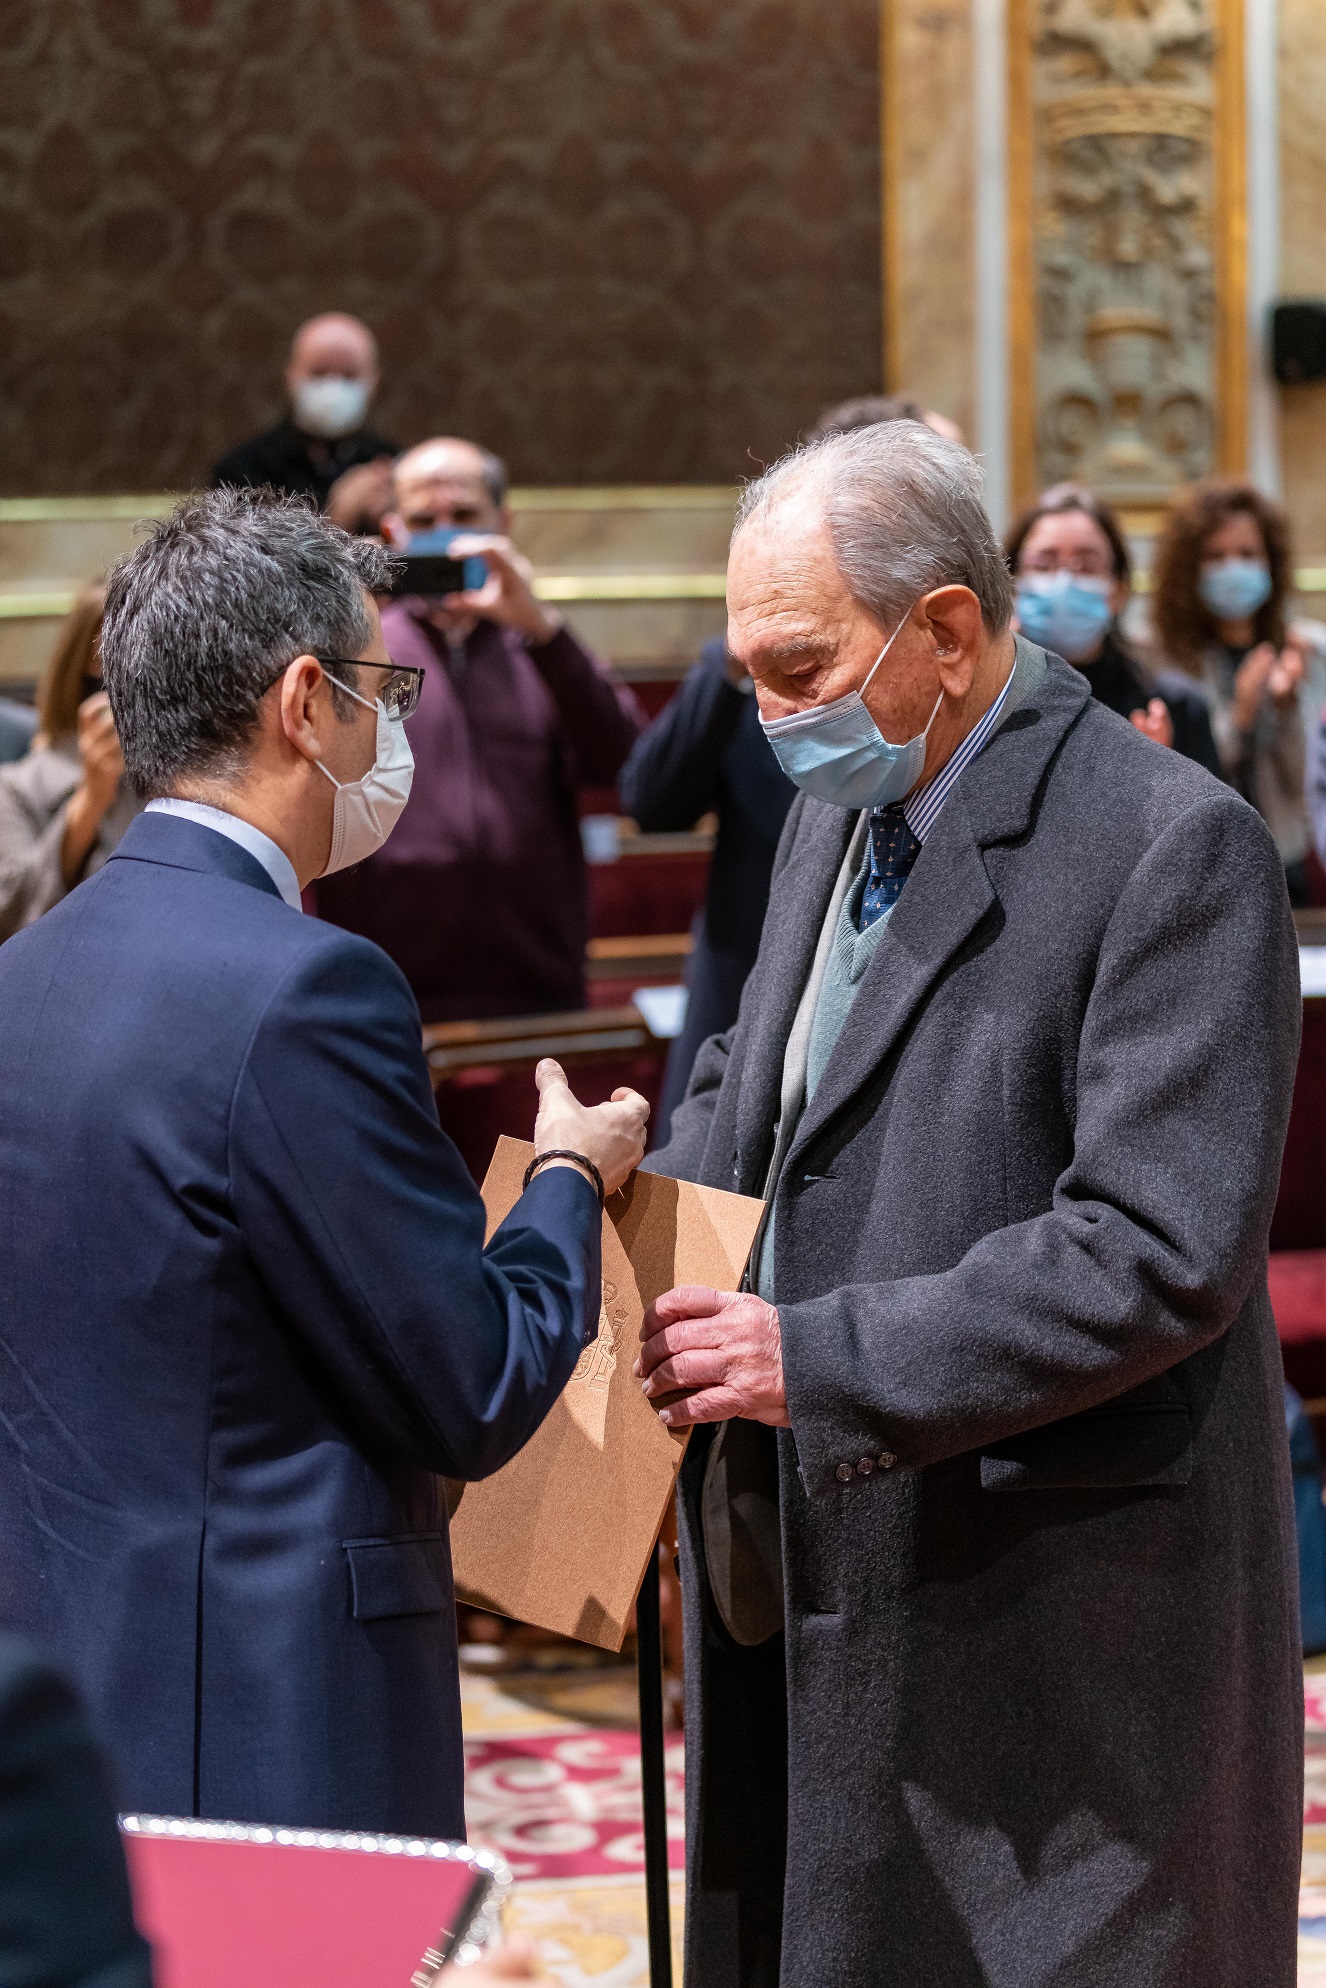 El hijo de Claudio Sánchez Albornoz recoge el documento de reparación simbólica de manos del ministro Félix Bolaños